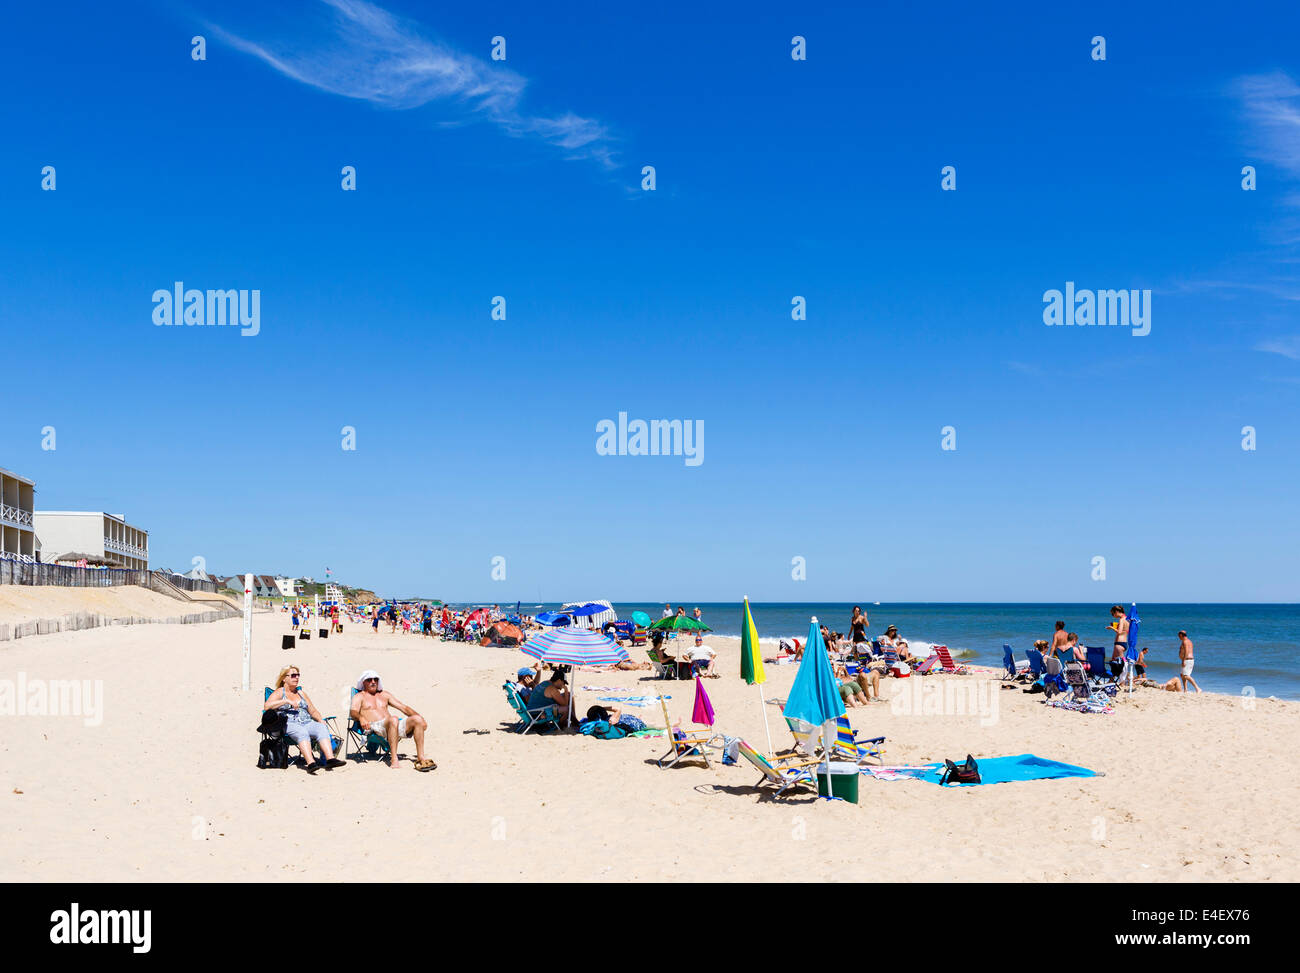 La playa de Montauk, el condado de Suffolk, en Long Island, NY, EE.UU. Foto de stock